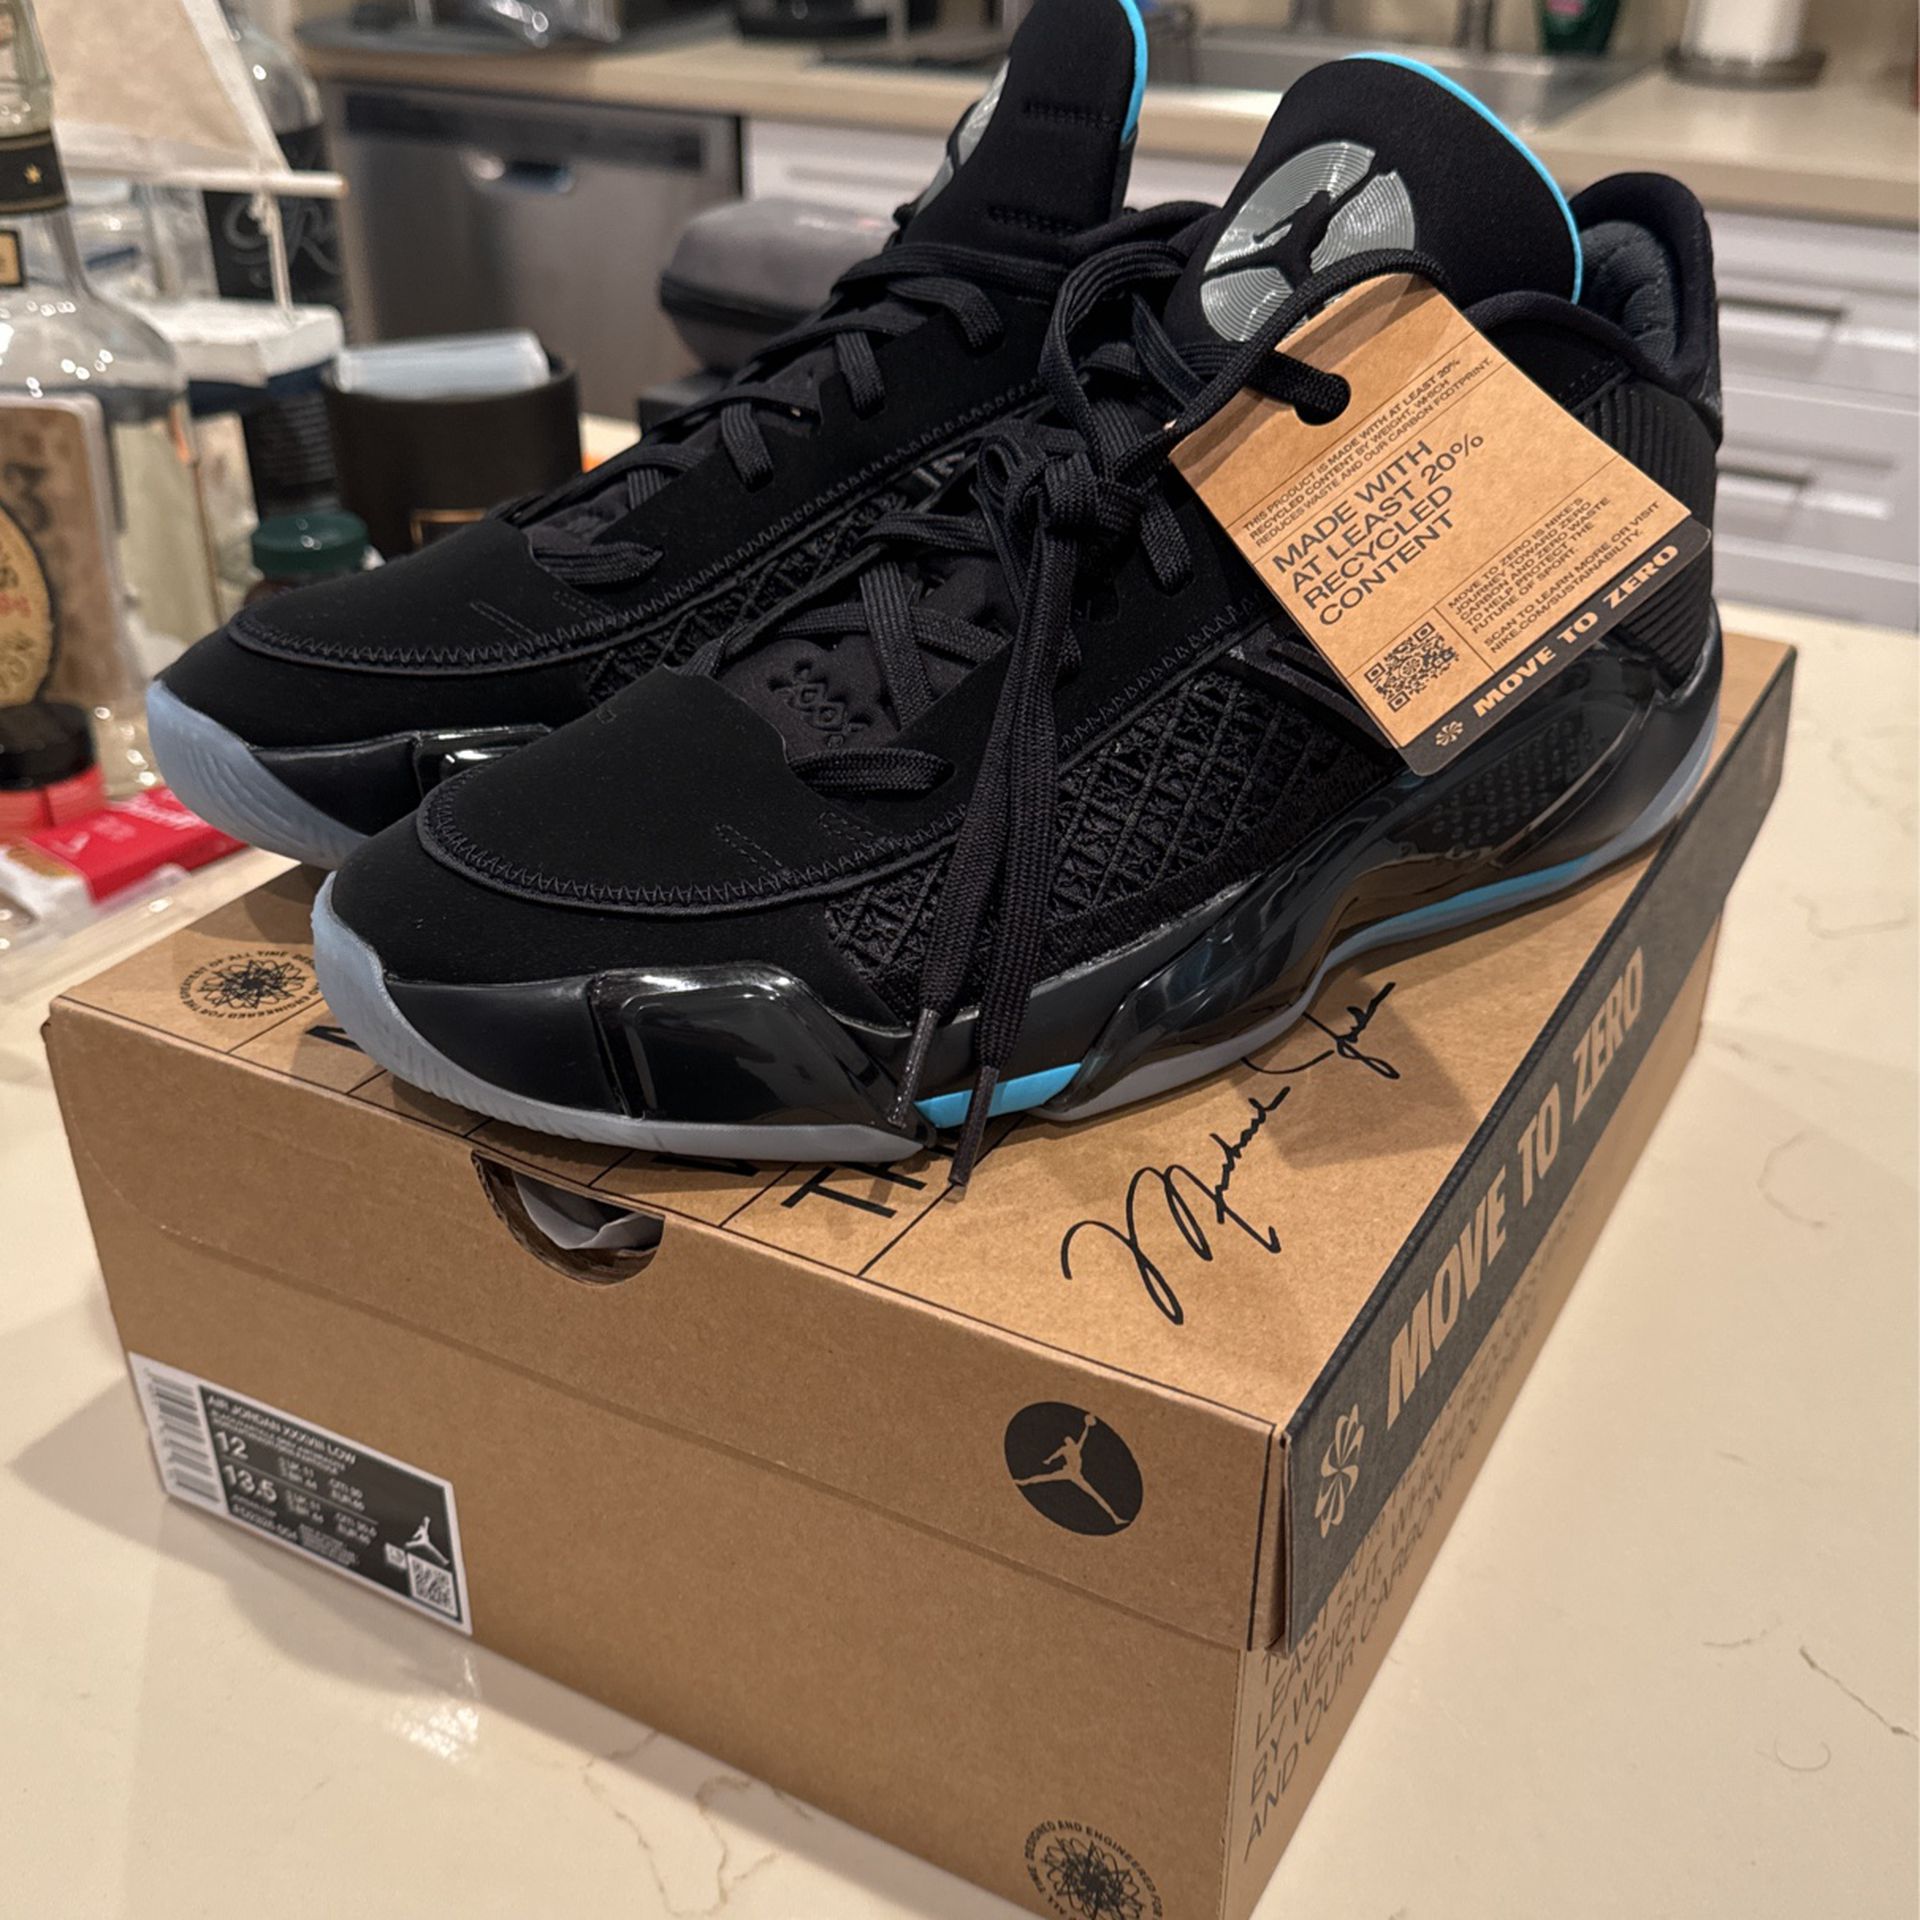 Air Jordan XXXVIII LOW Men’s Size 12 New